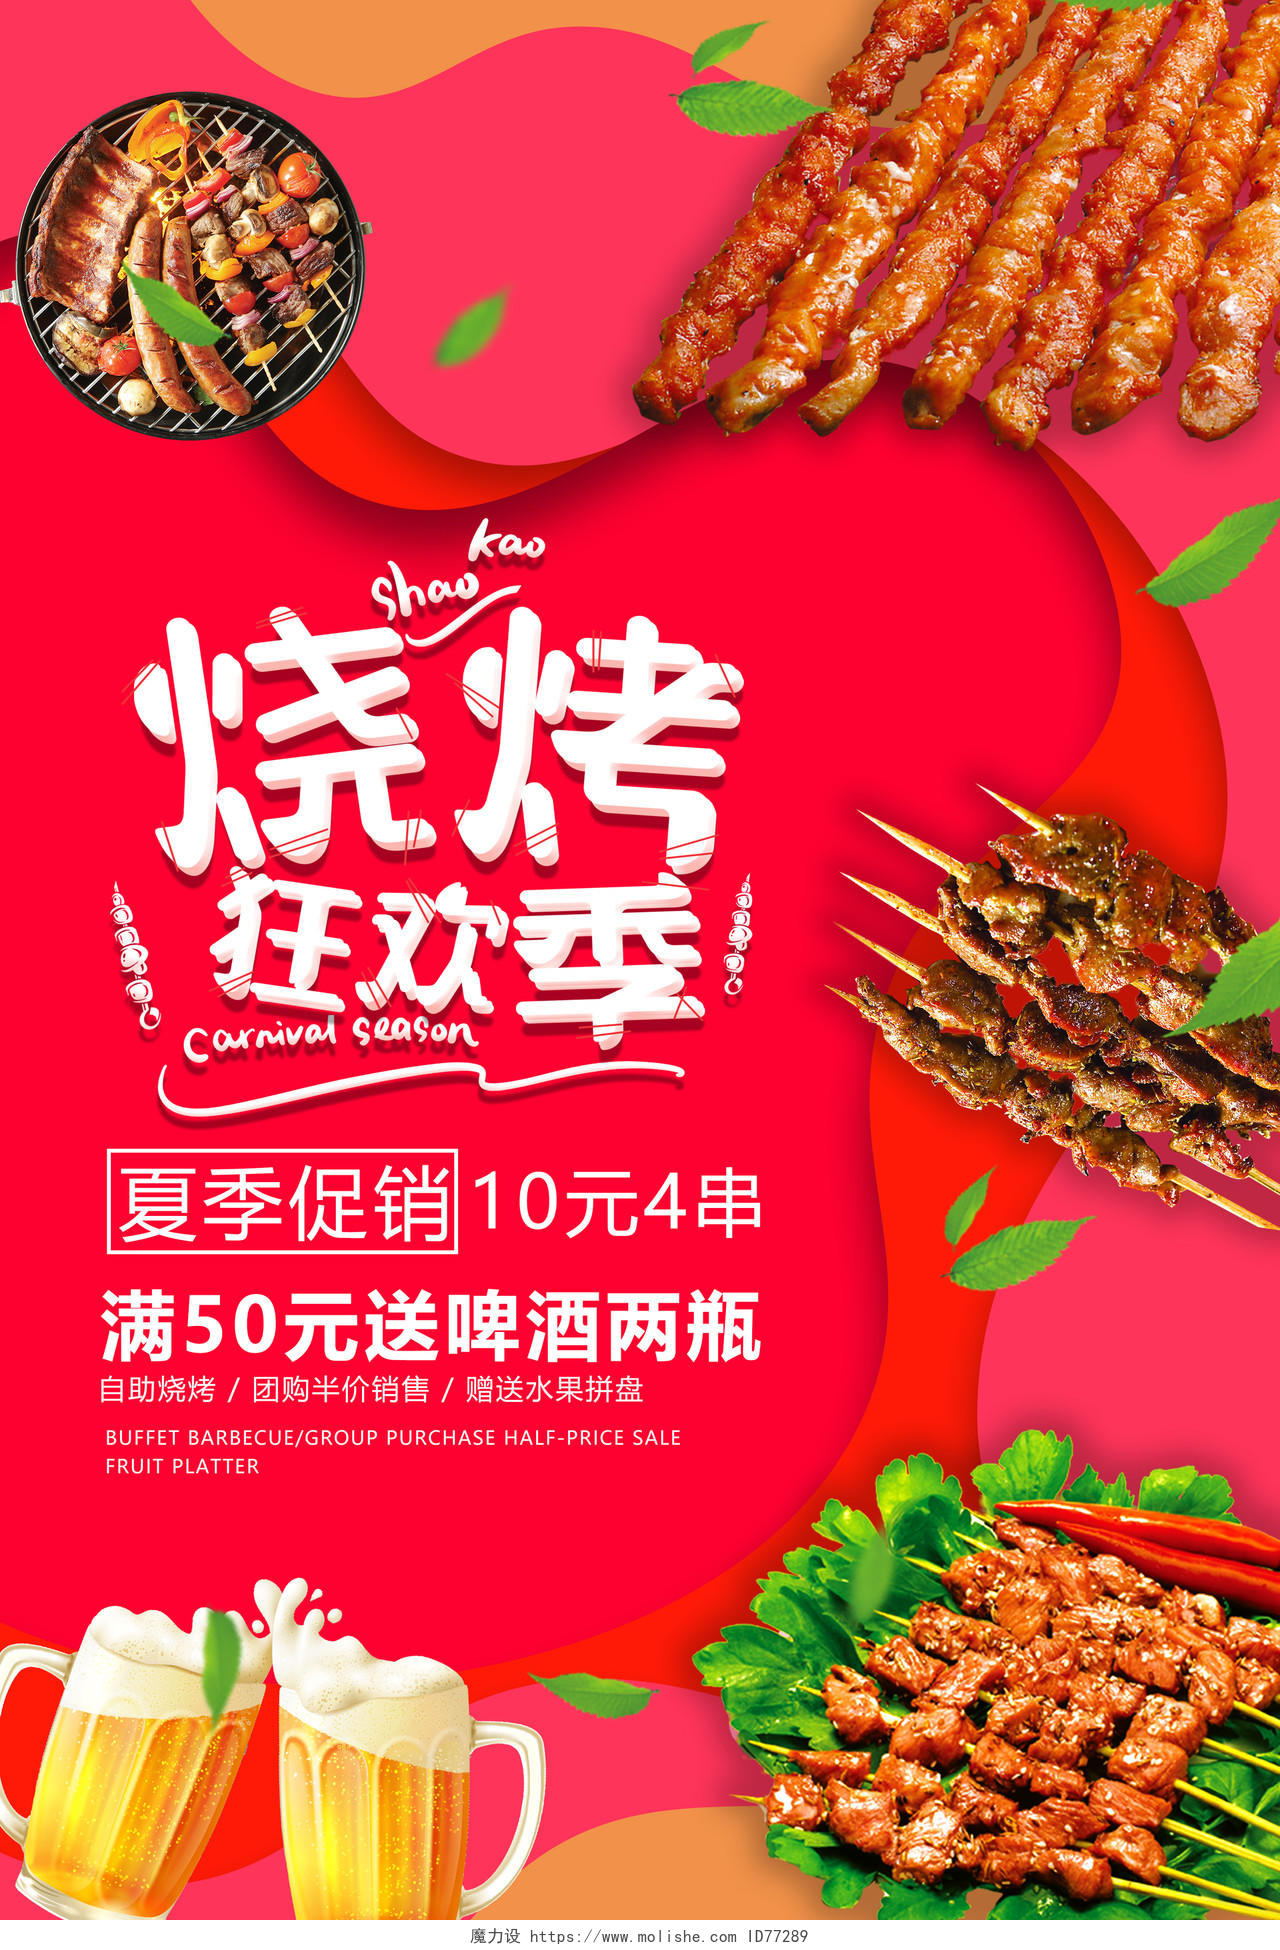 红色炫彩烧烤狂欢季夏季促销活动海报美食烧烤串串海报